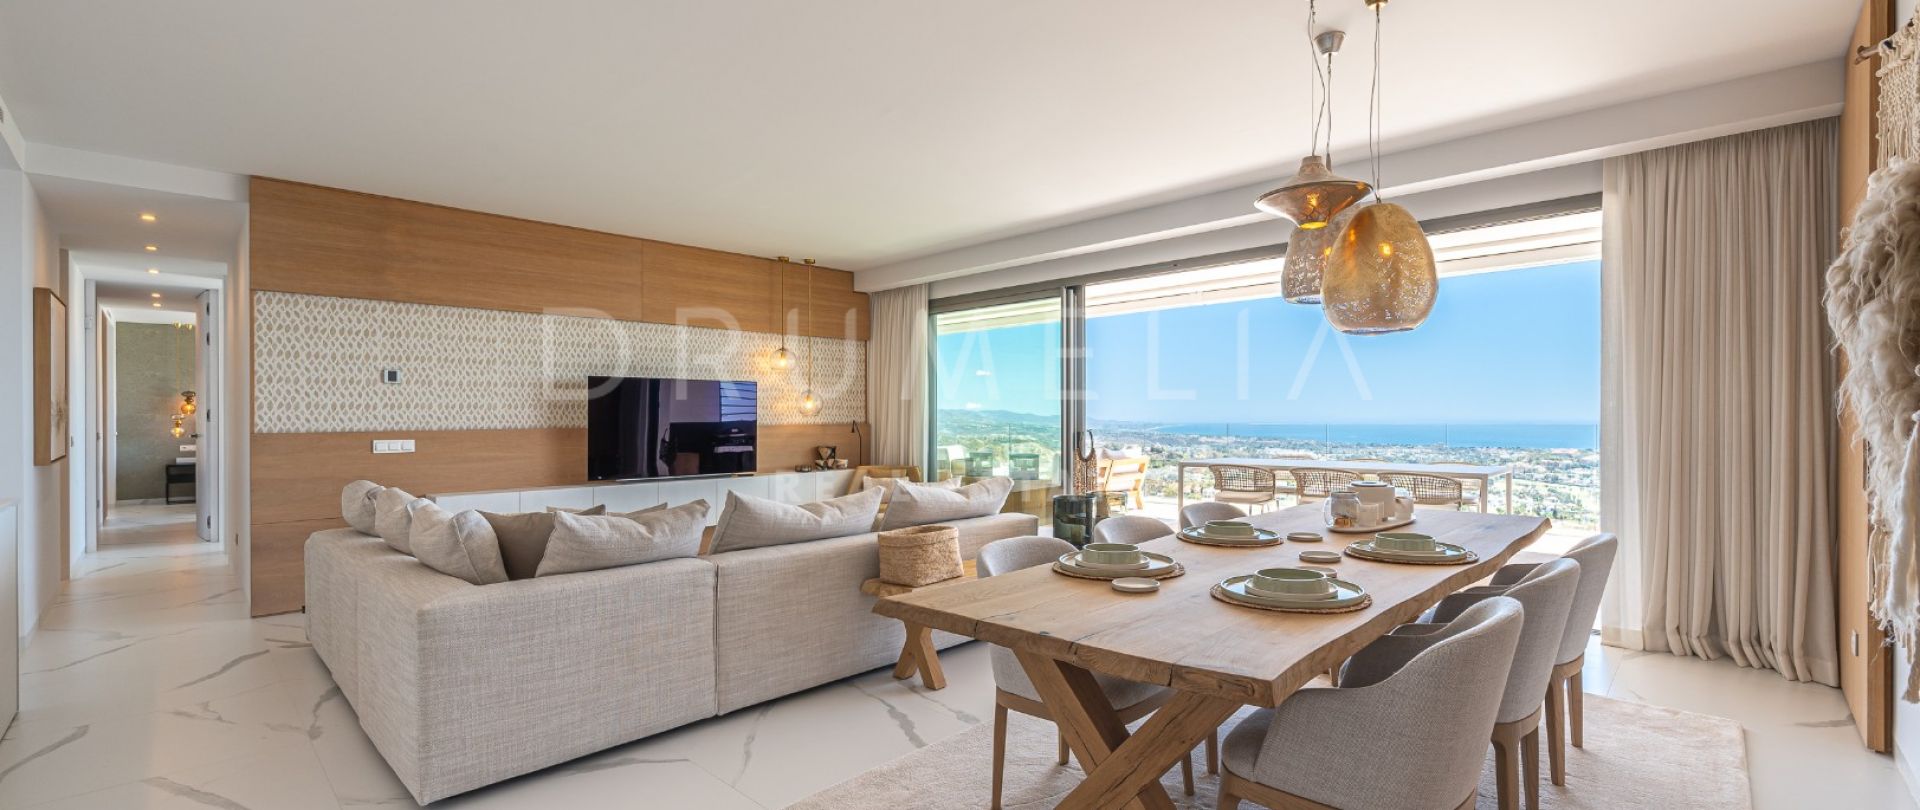 Prachtig gloednieuw modern luxe appartement met panoramisch uitzicht in boetiekcomplex in Benahavis.